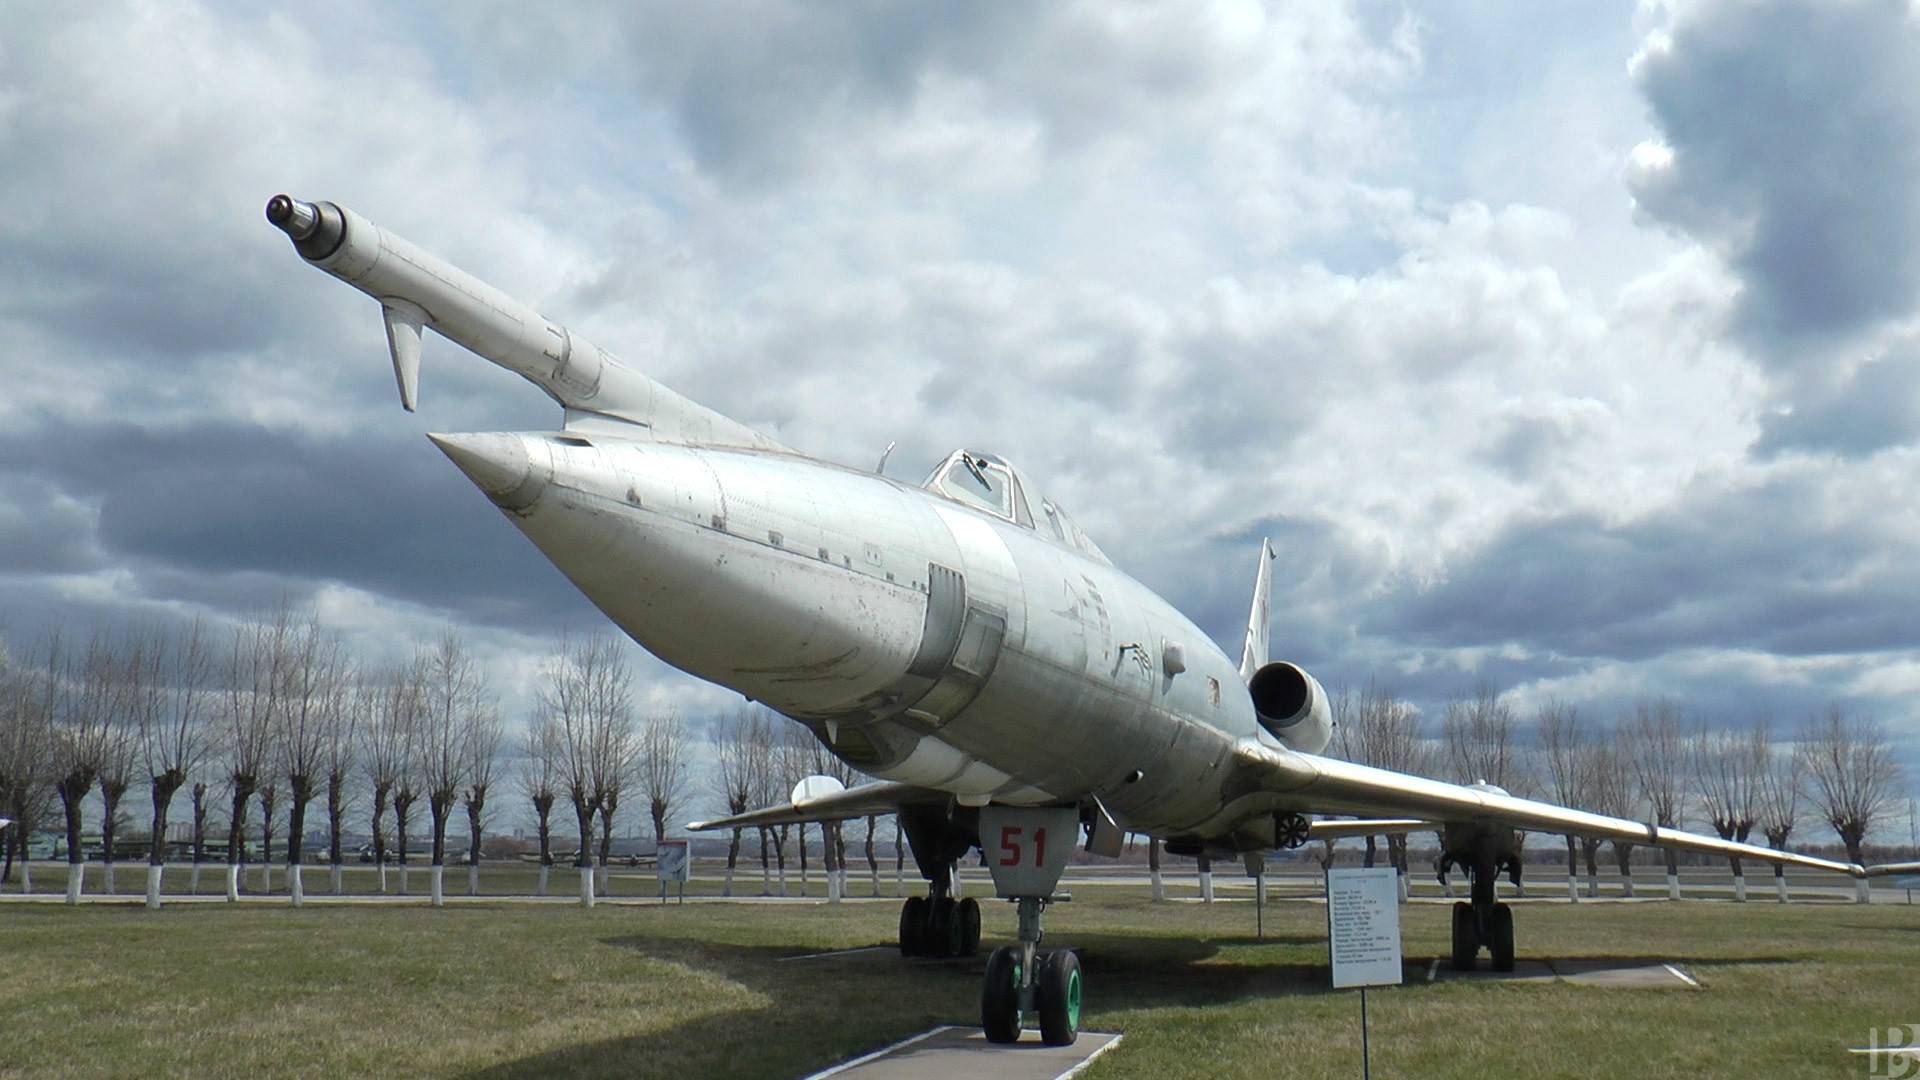 Рязанский музей дальней авиациисодержание а также история [ править ]